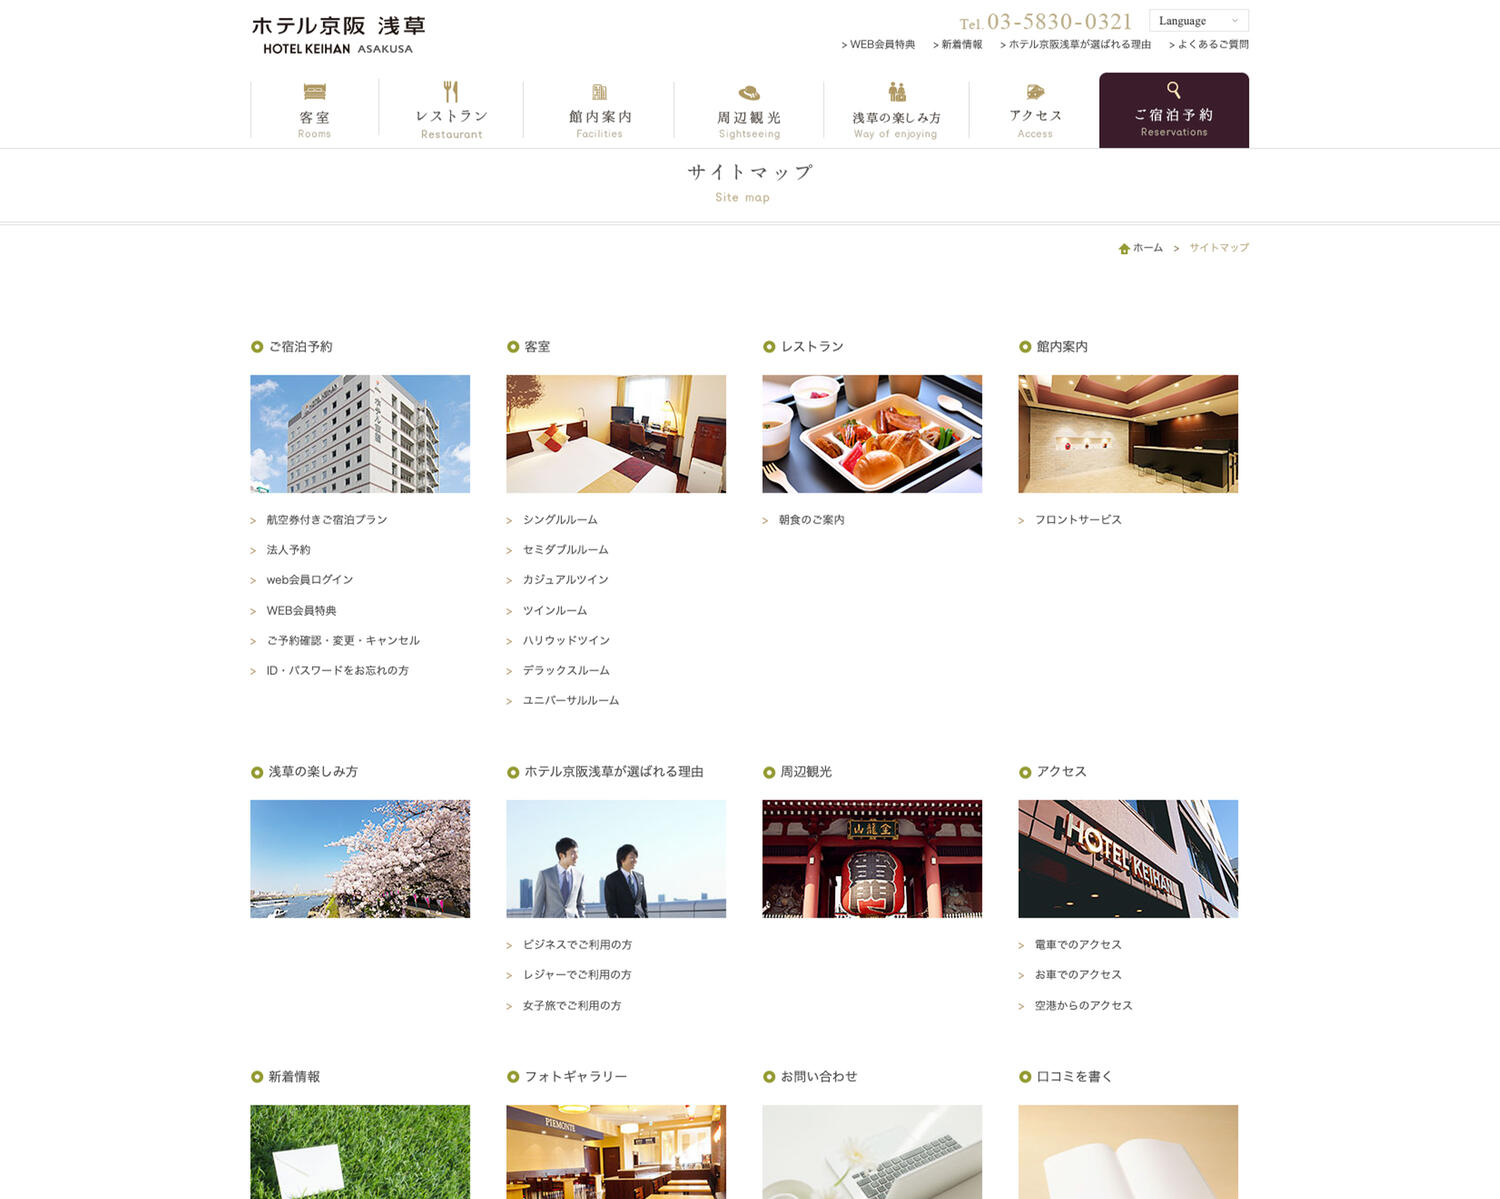 ホテル京阪 浅草 サイトマップ